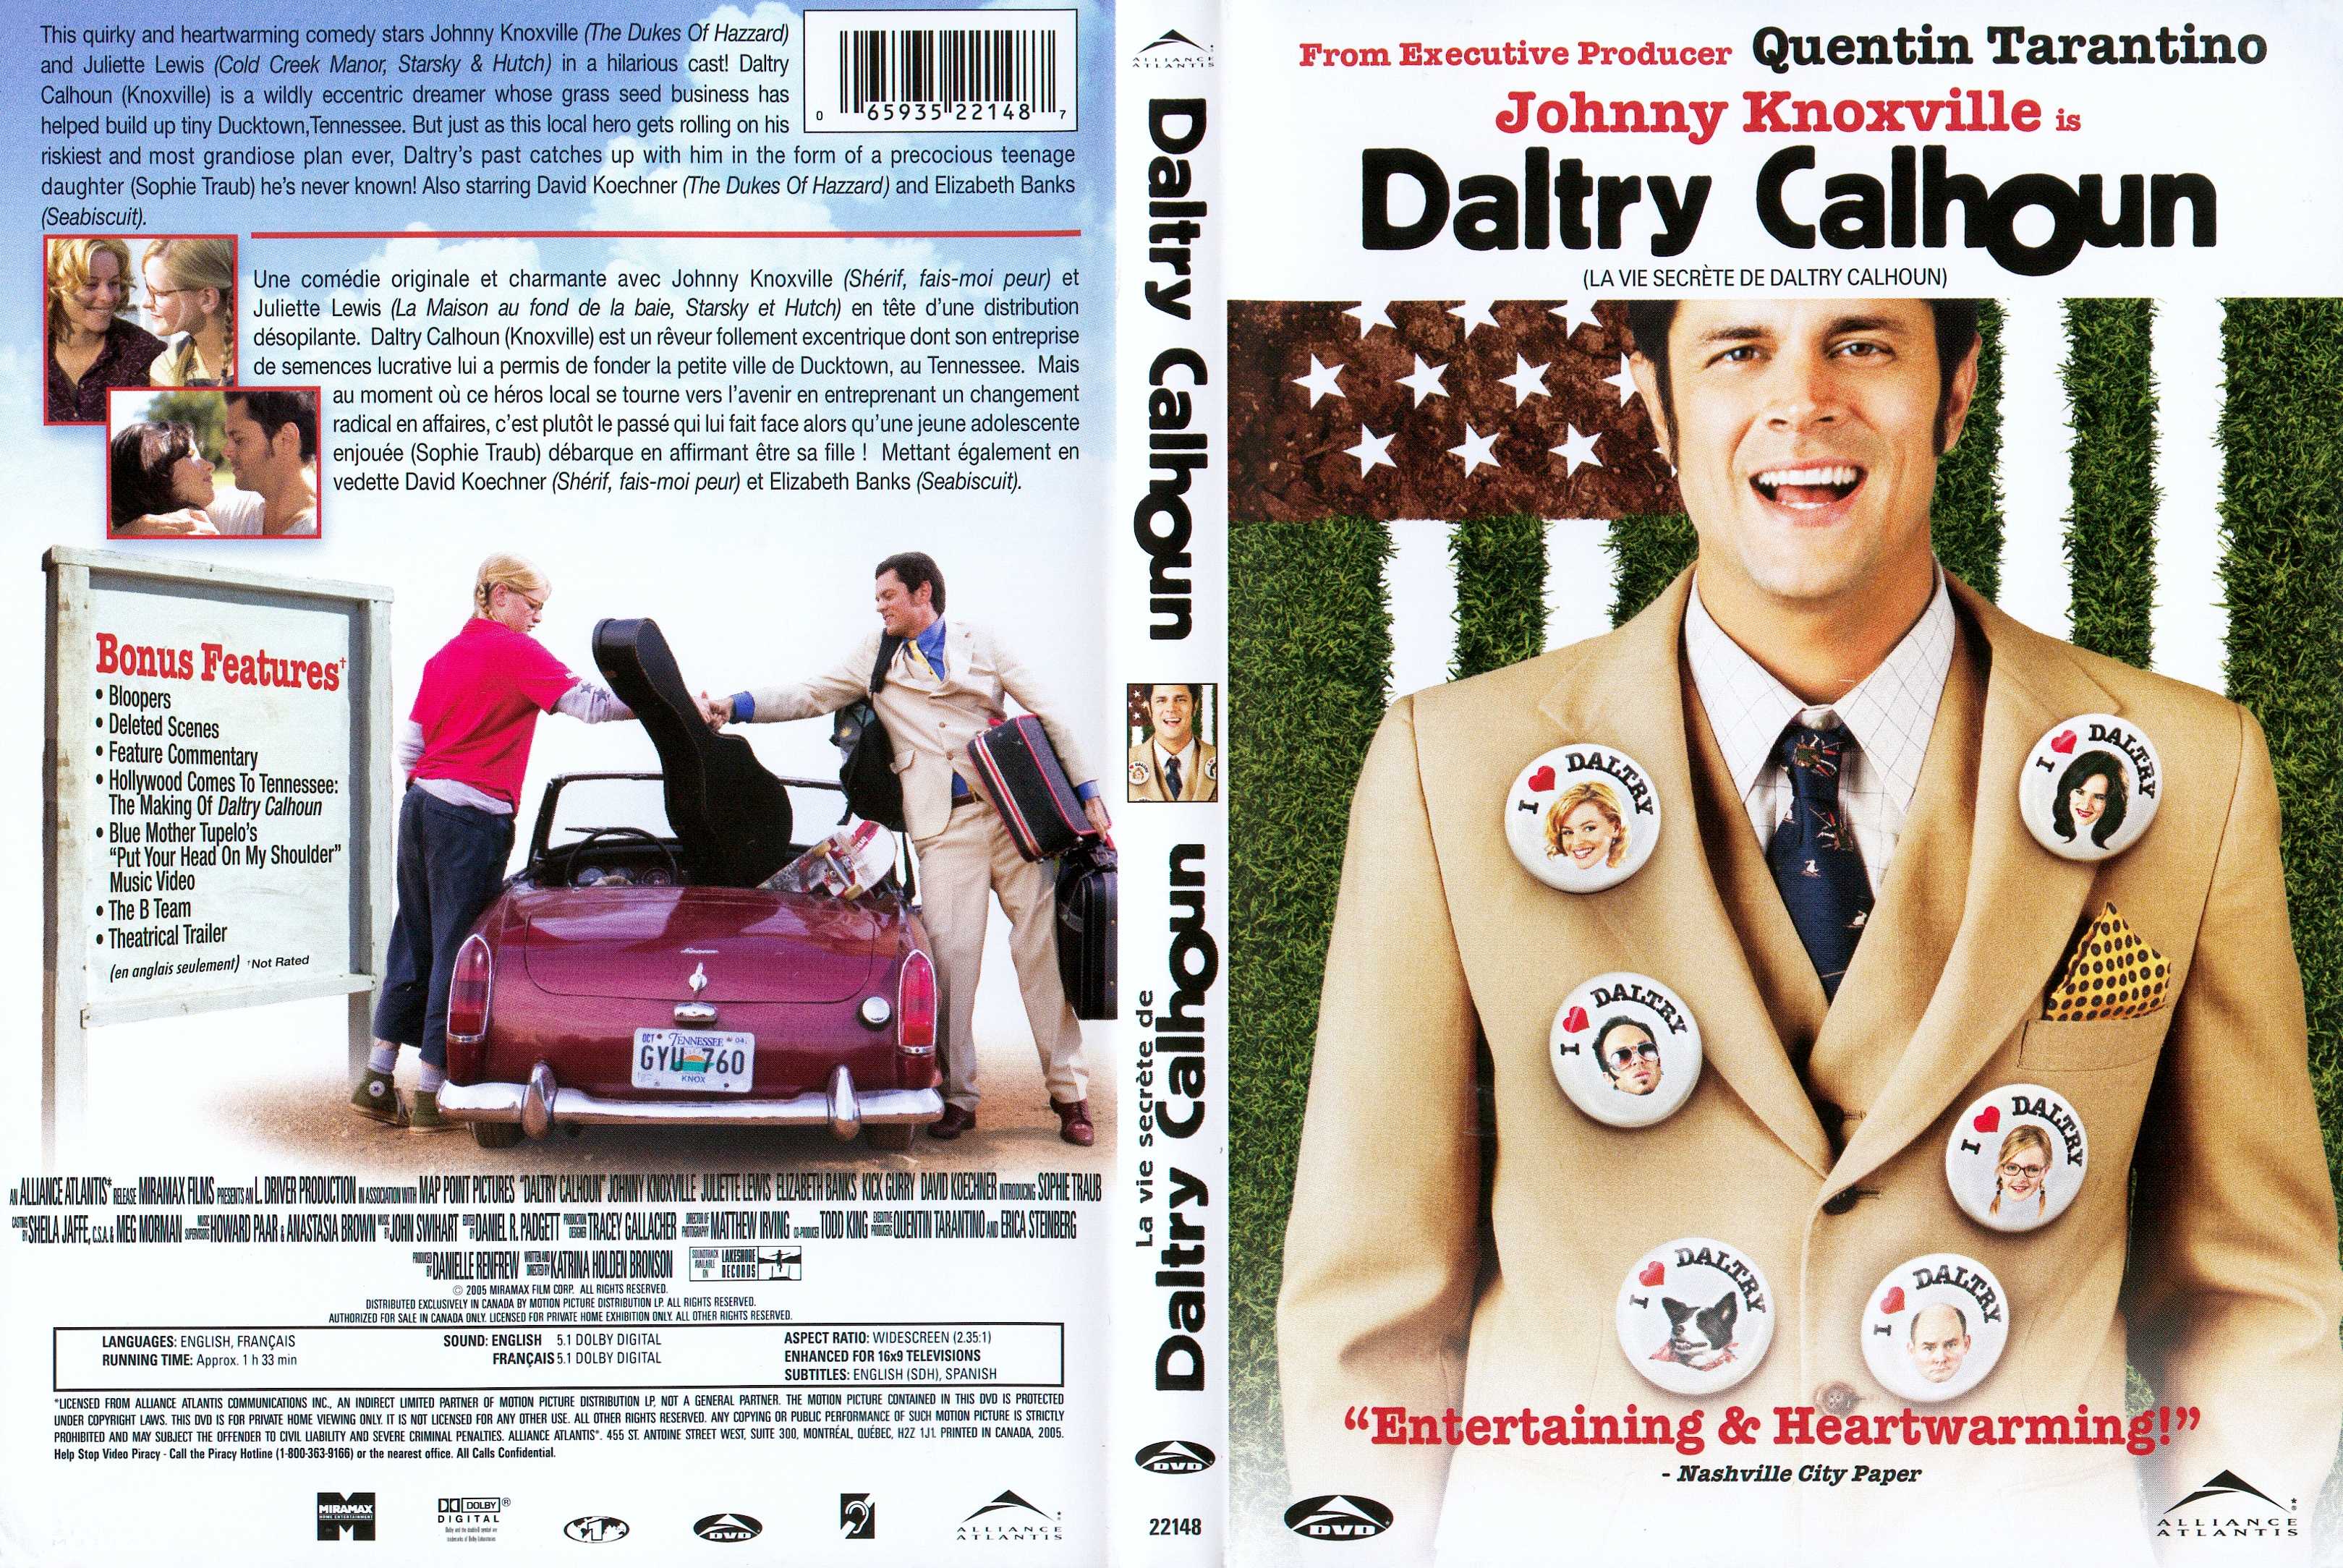 Jaquette DVD Daltry Calhoun v2